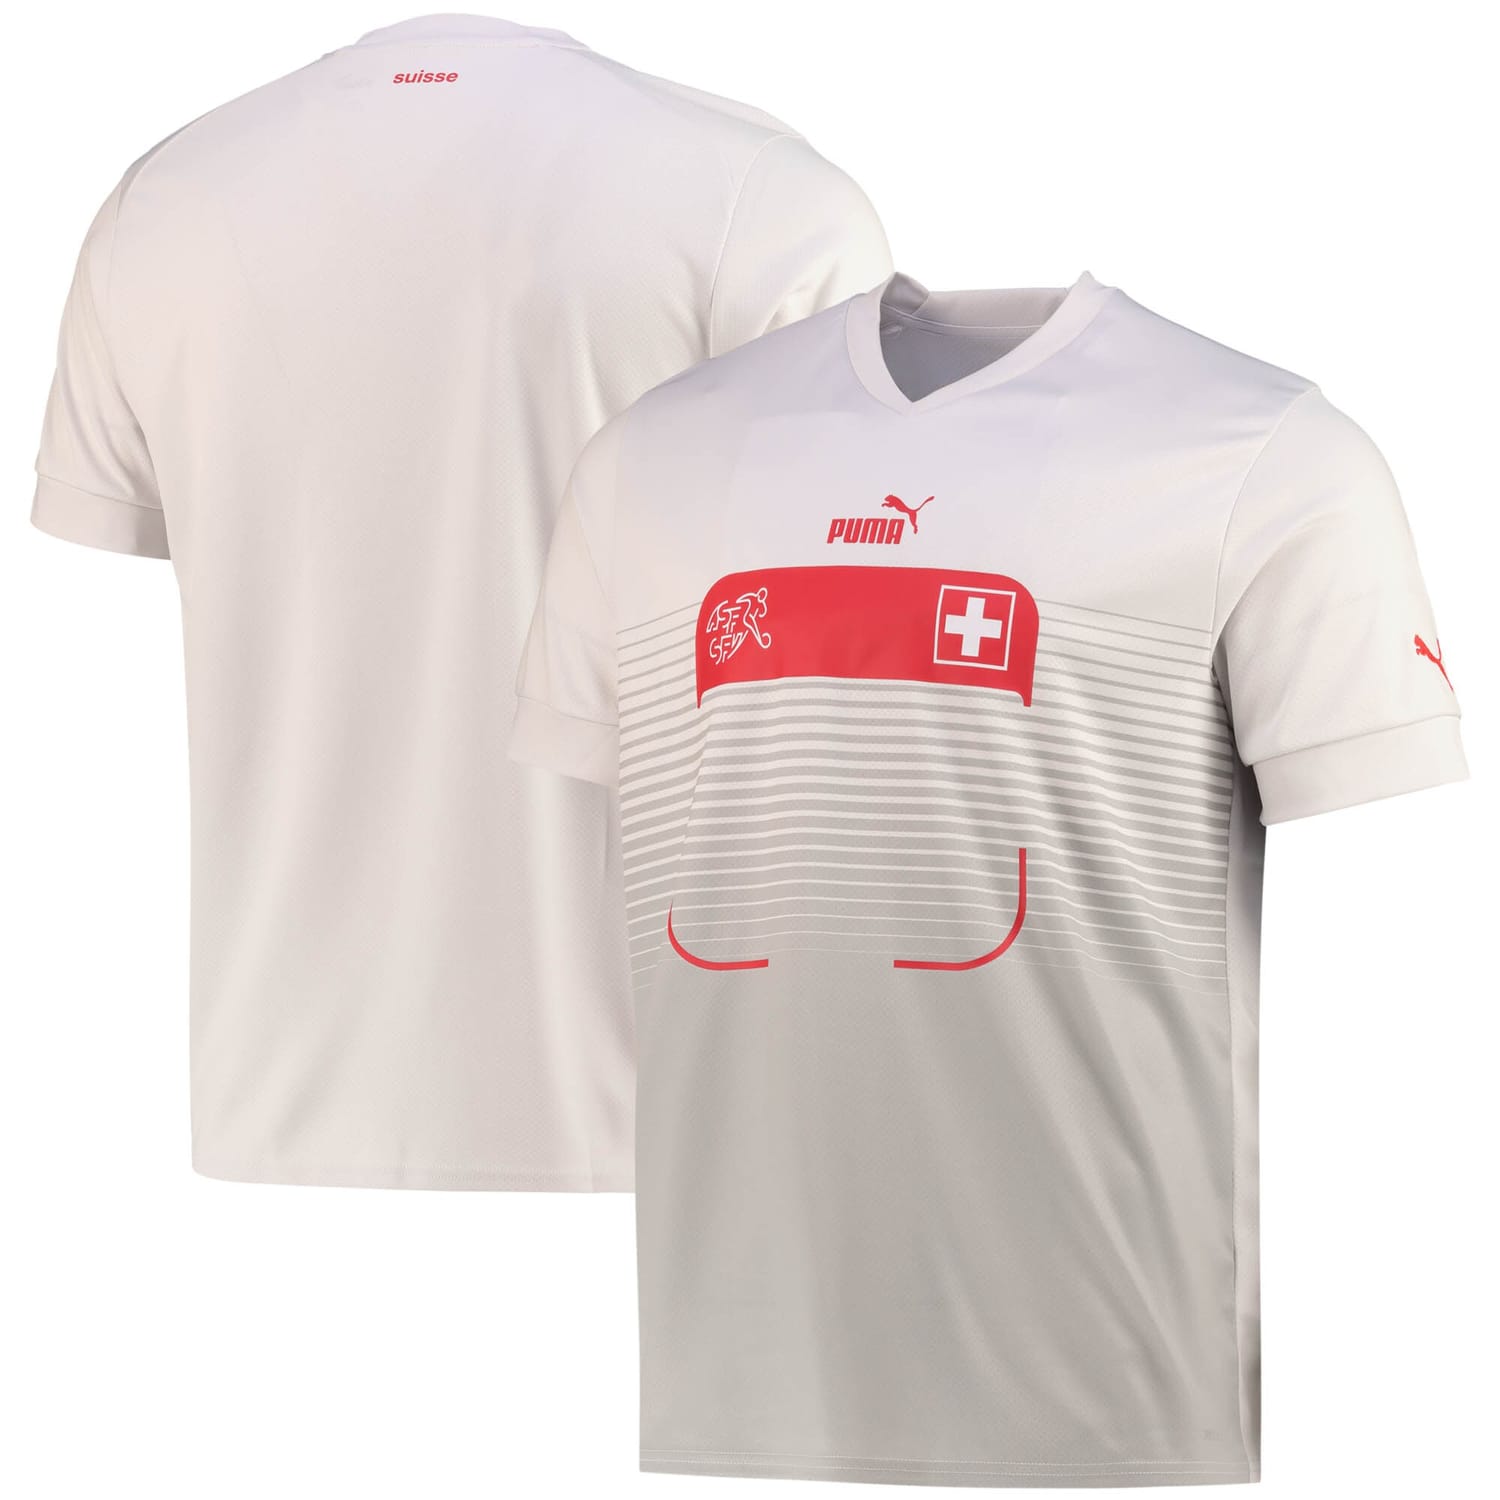 Switzerland National Team Away Jersey Shirt 2022 for Men